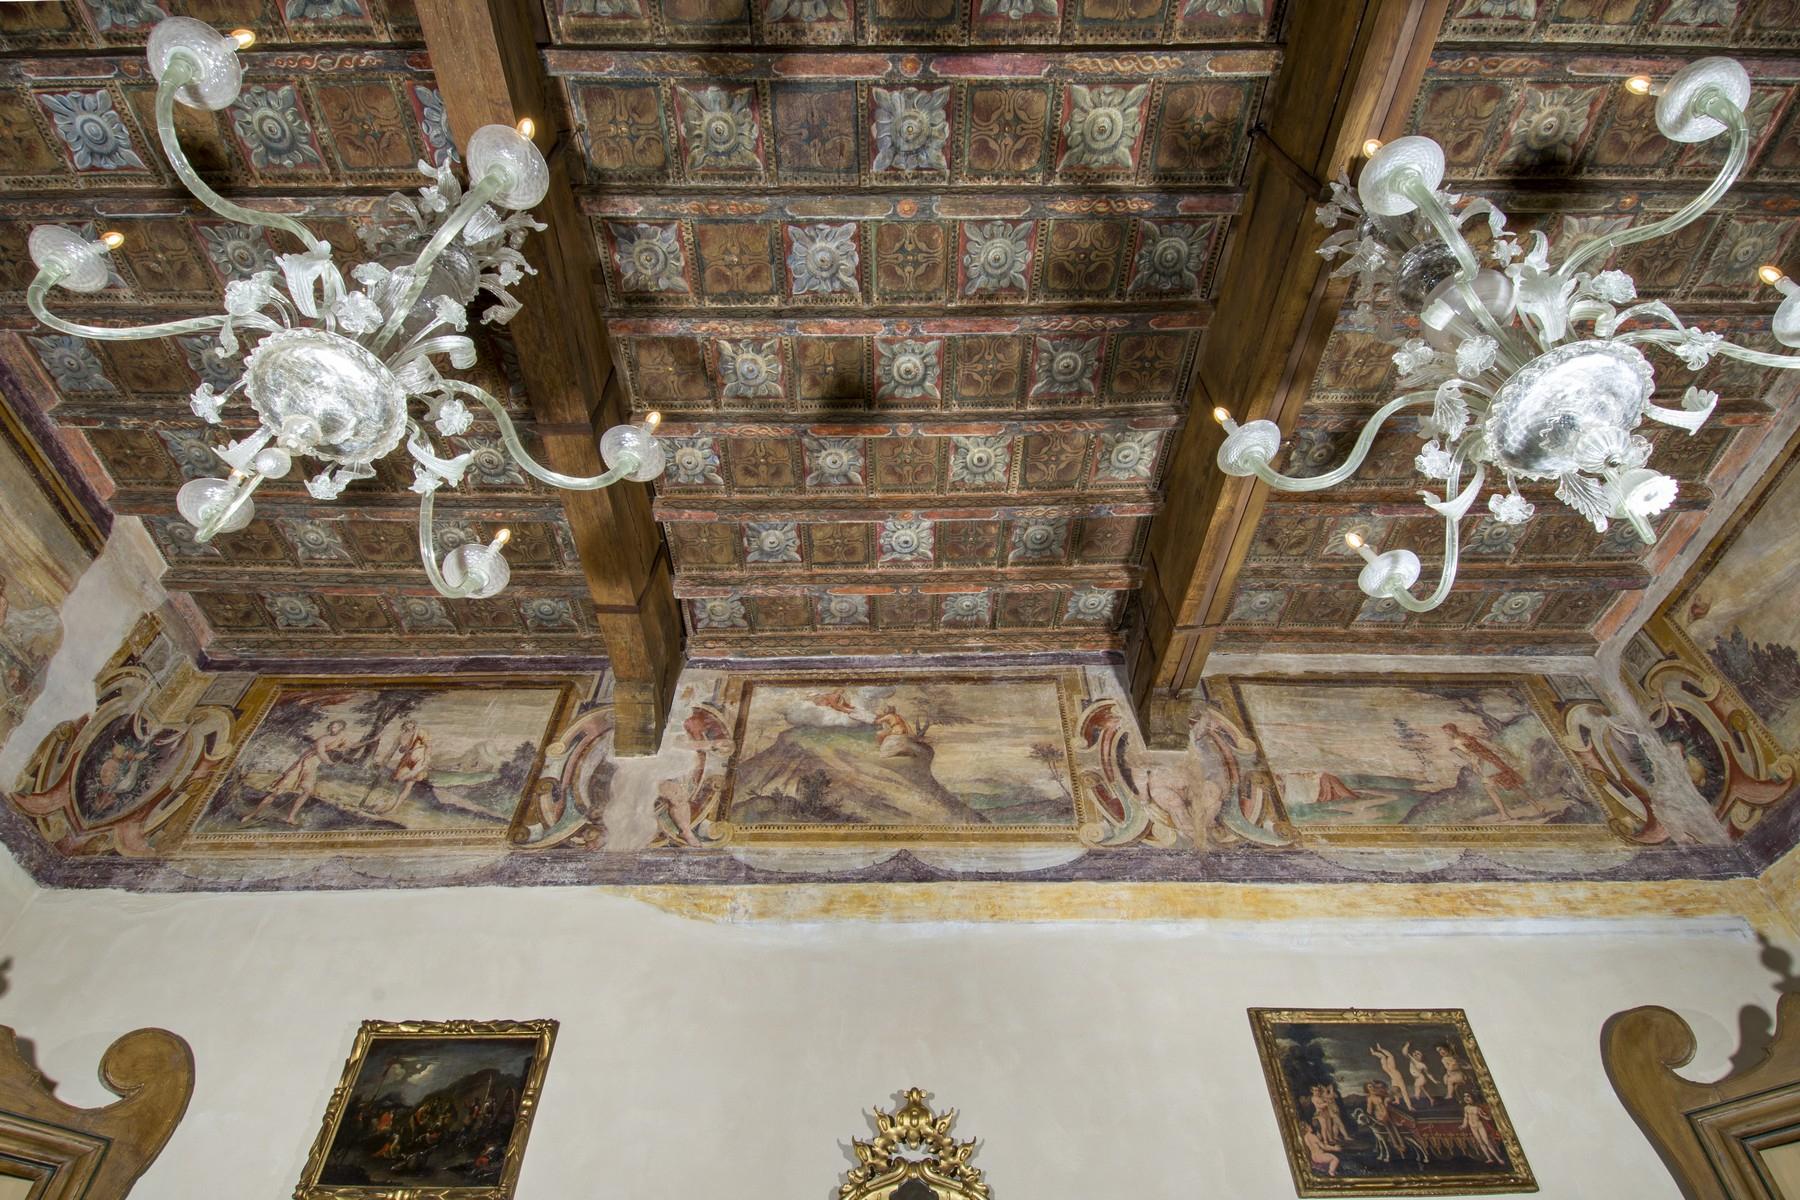 Meraviglioso palazzo storico nel cuore di Reggio Emilia - 5